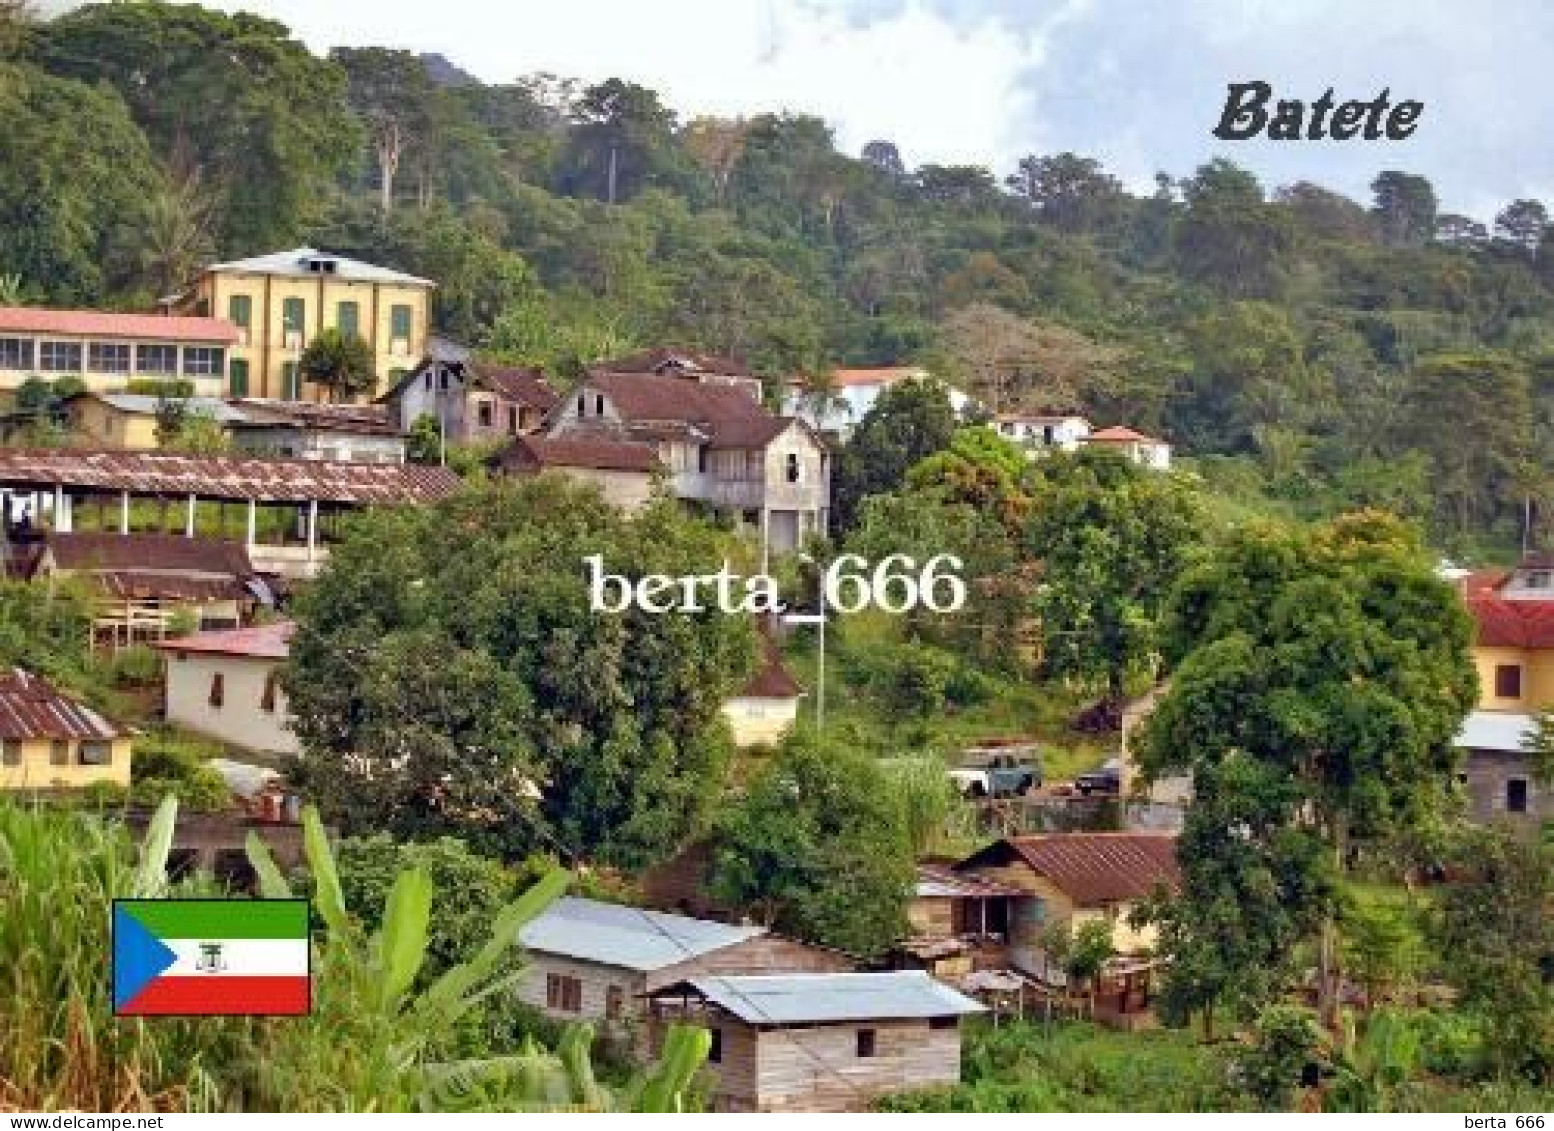 Equatorial Guinea Batete New Postcard - Guinea Equatoriale